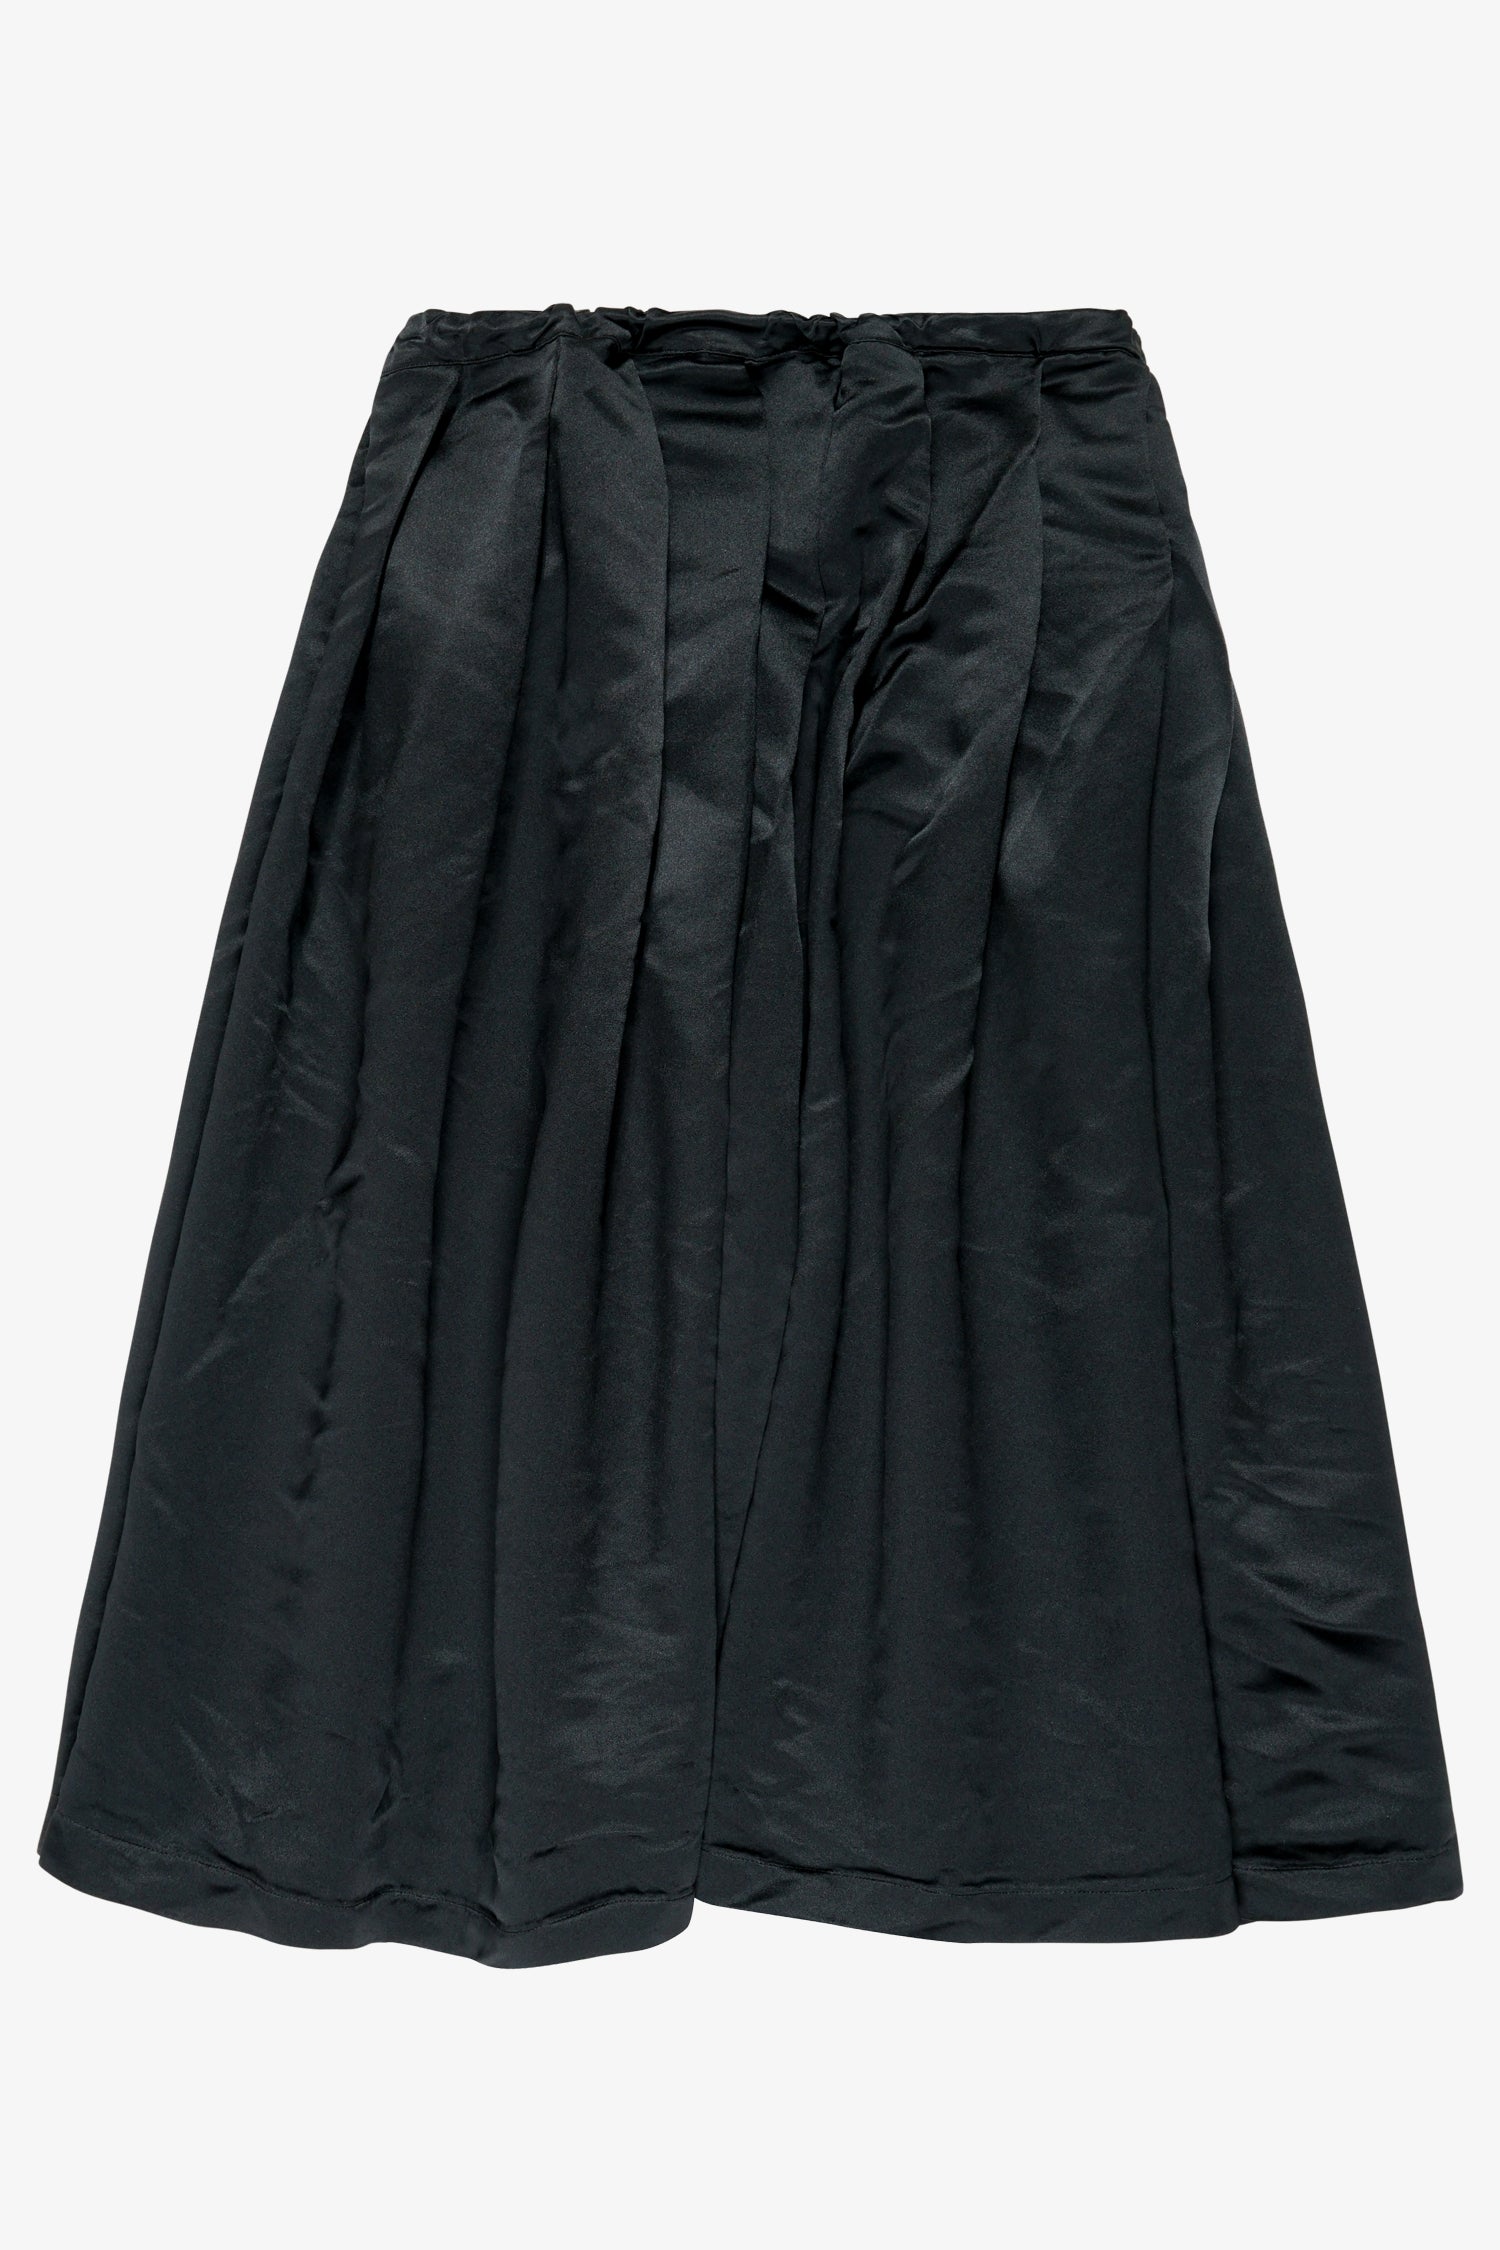 Selectshop FRAME - COMME DES GARCONS BLACK Satin Skirt Bottoms Dubai